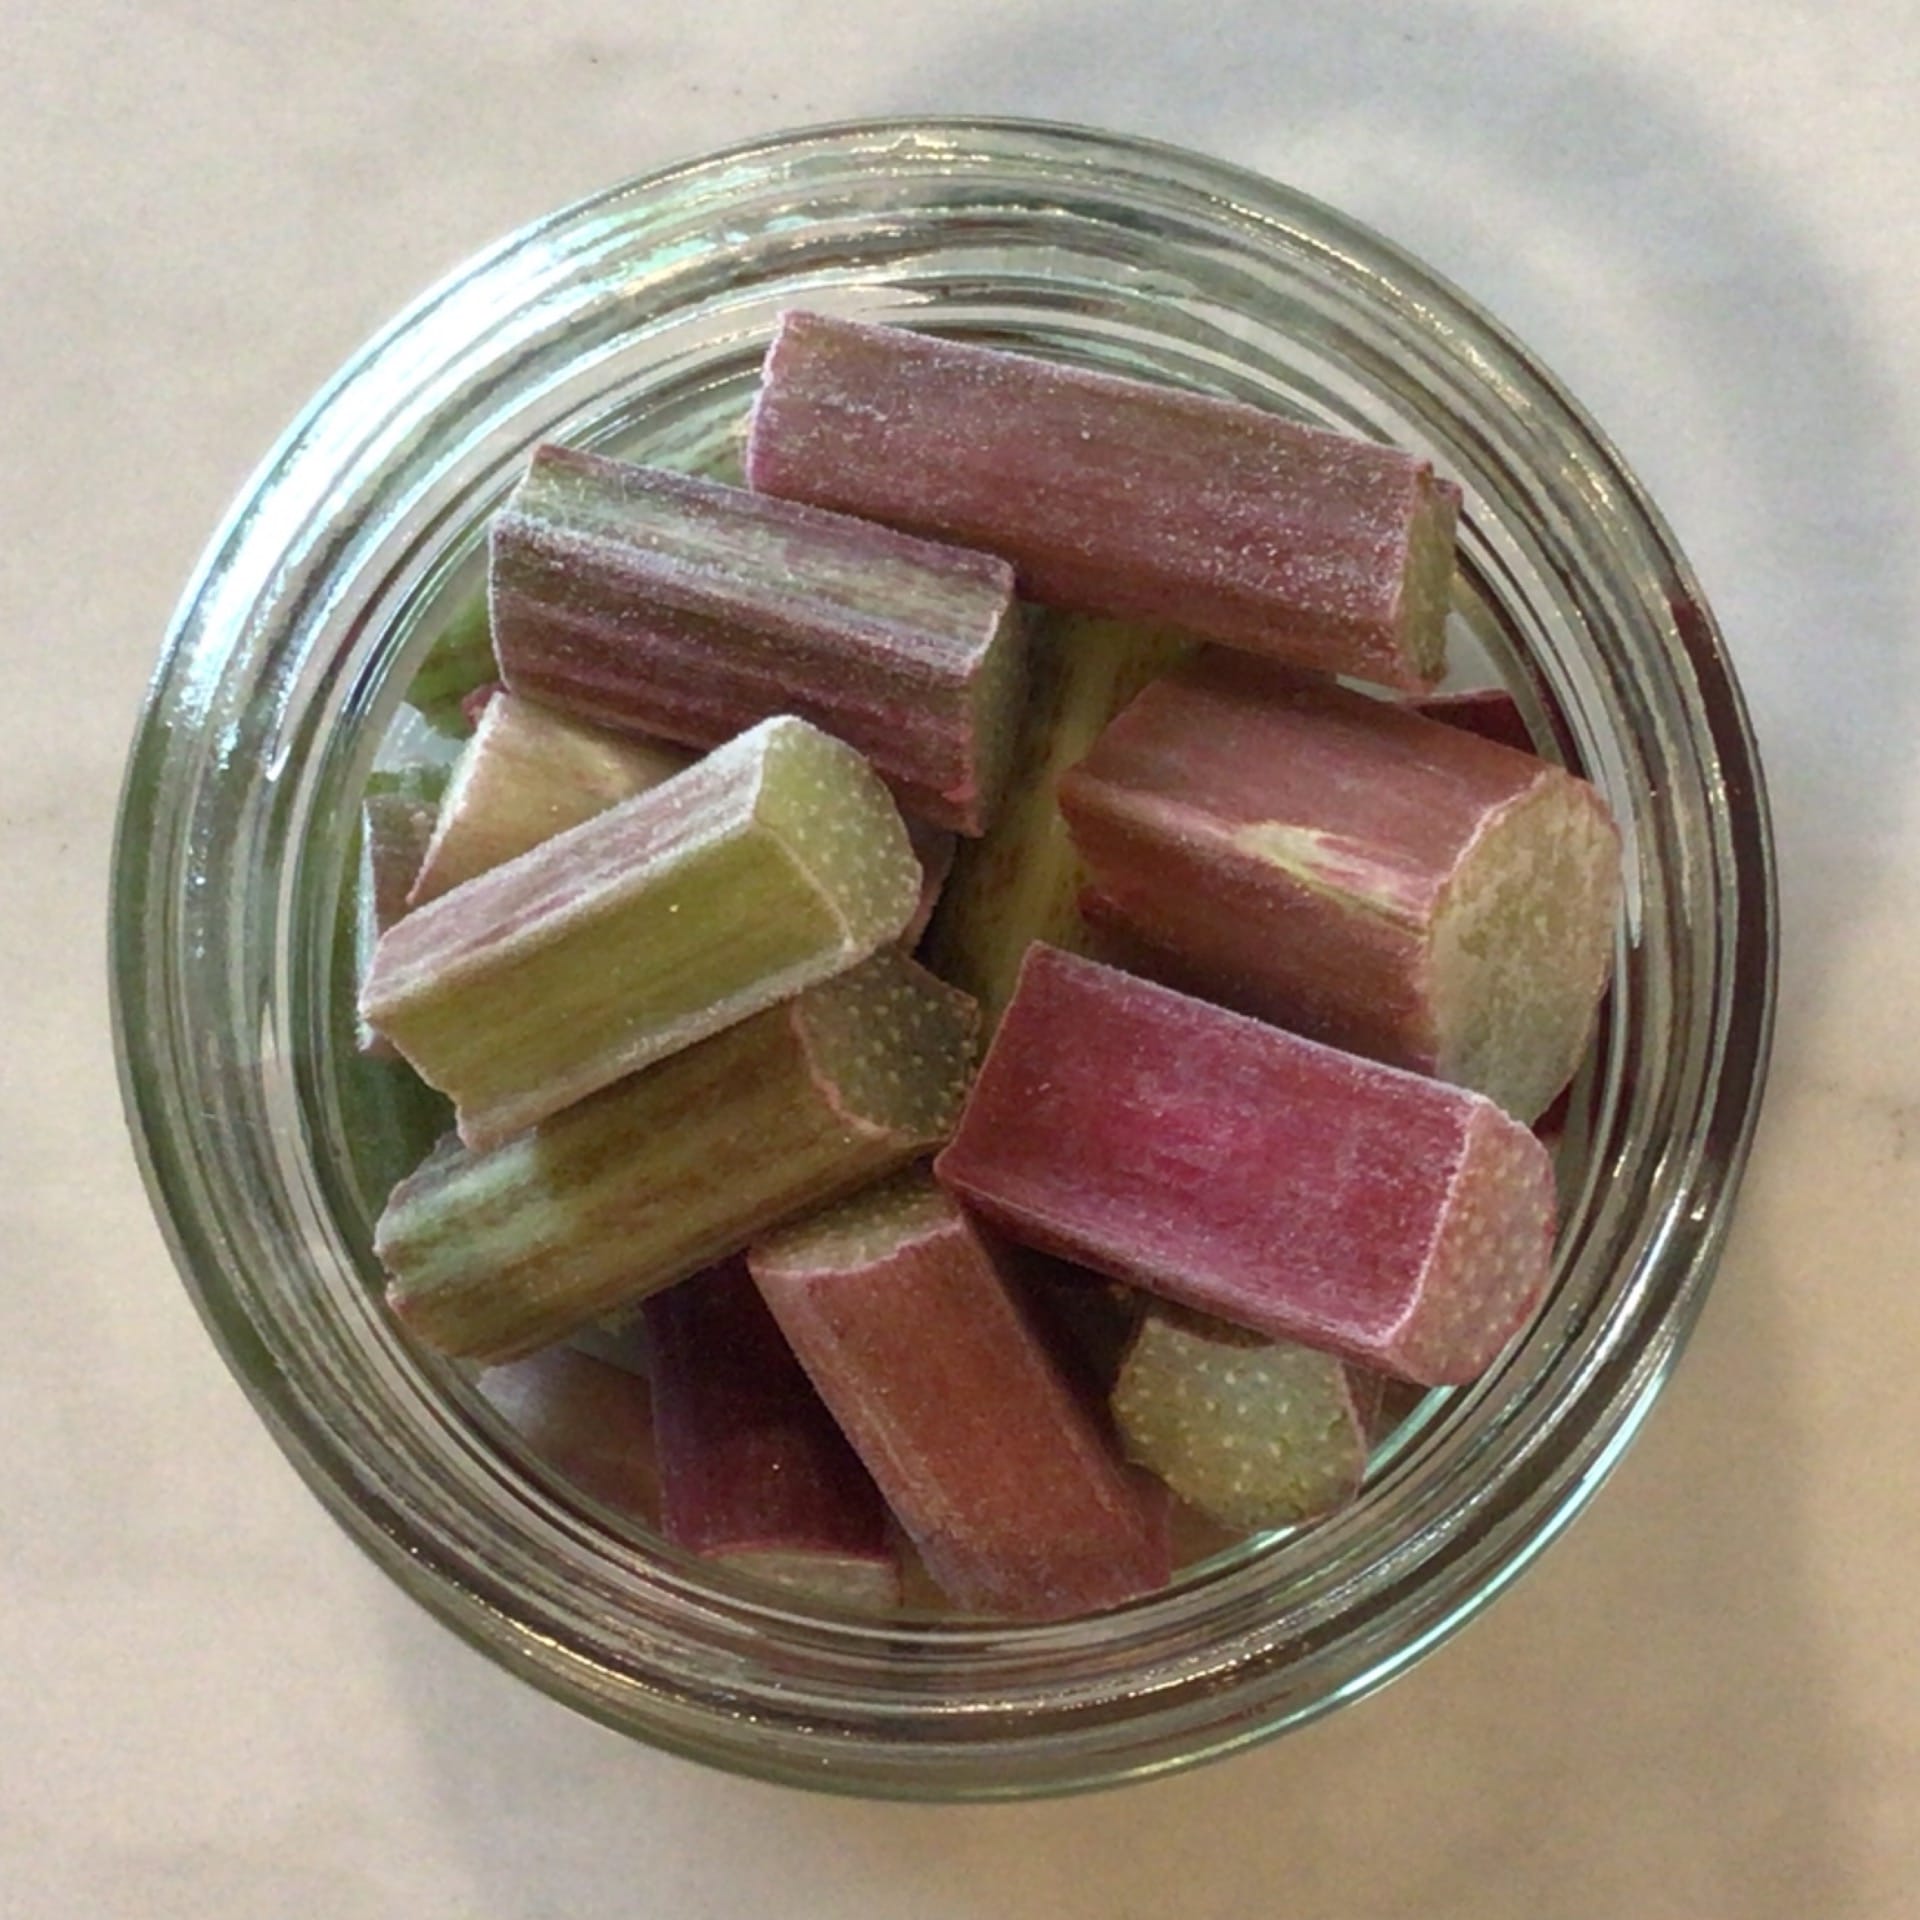 rhubarb pieces frozen